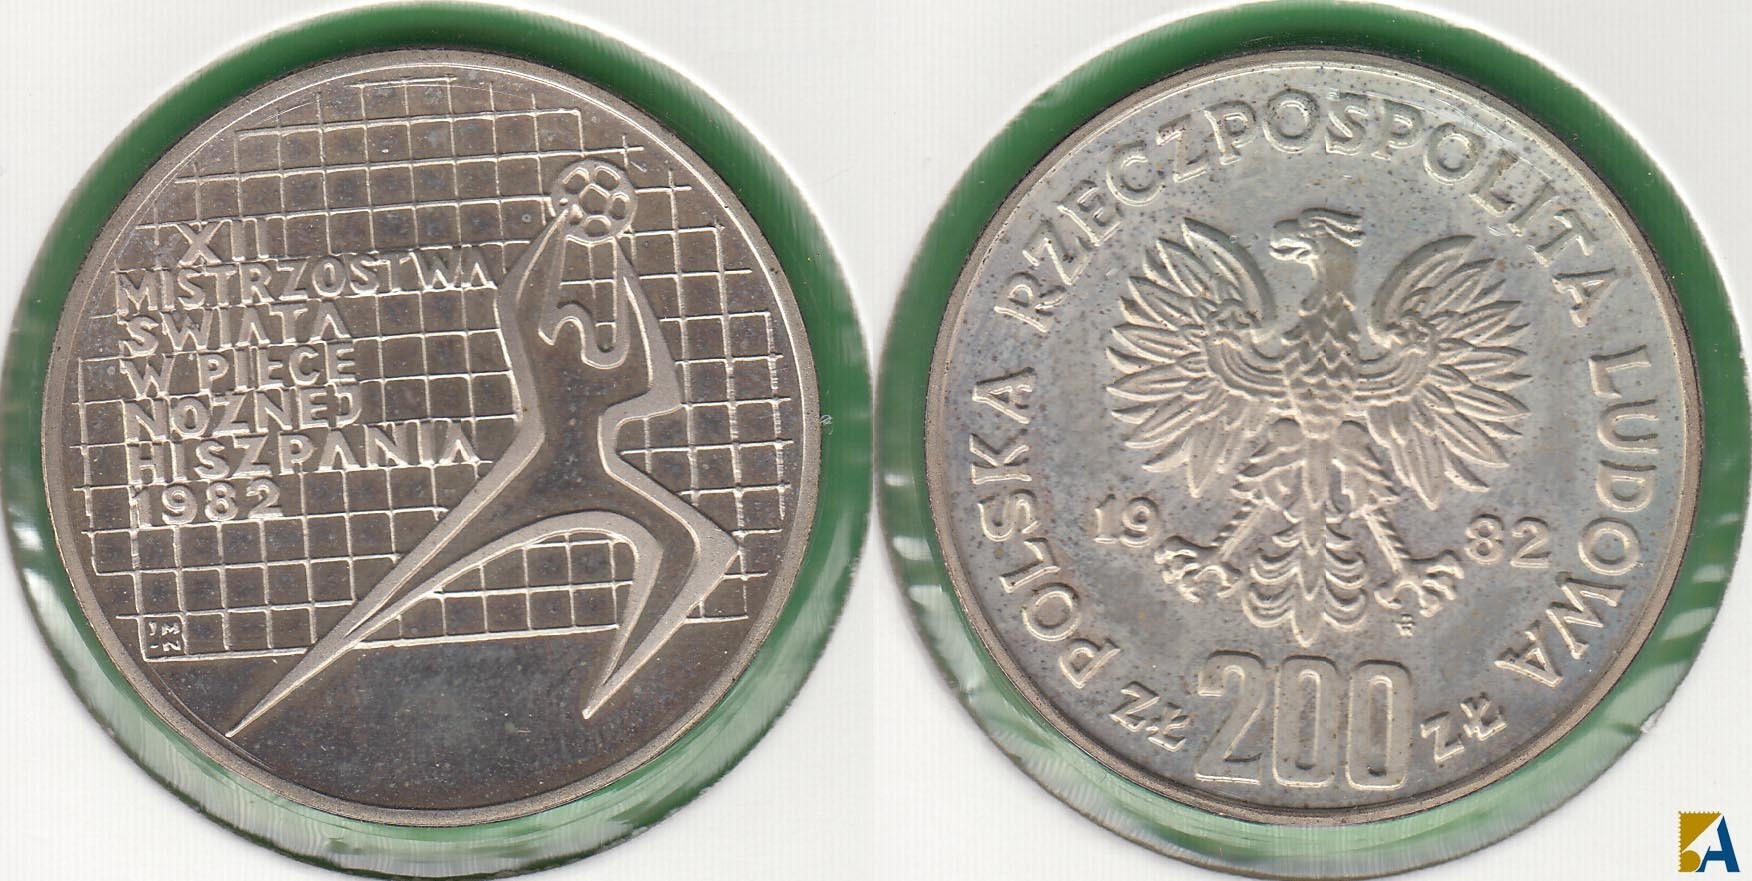 POLONIA - POLSKA. 200 ZLOTYCH DE 1982. PLATA 0.750.